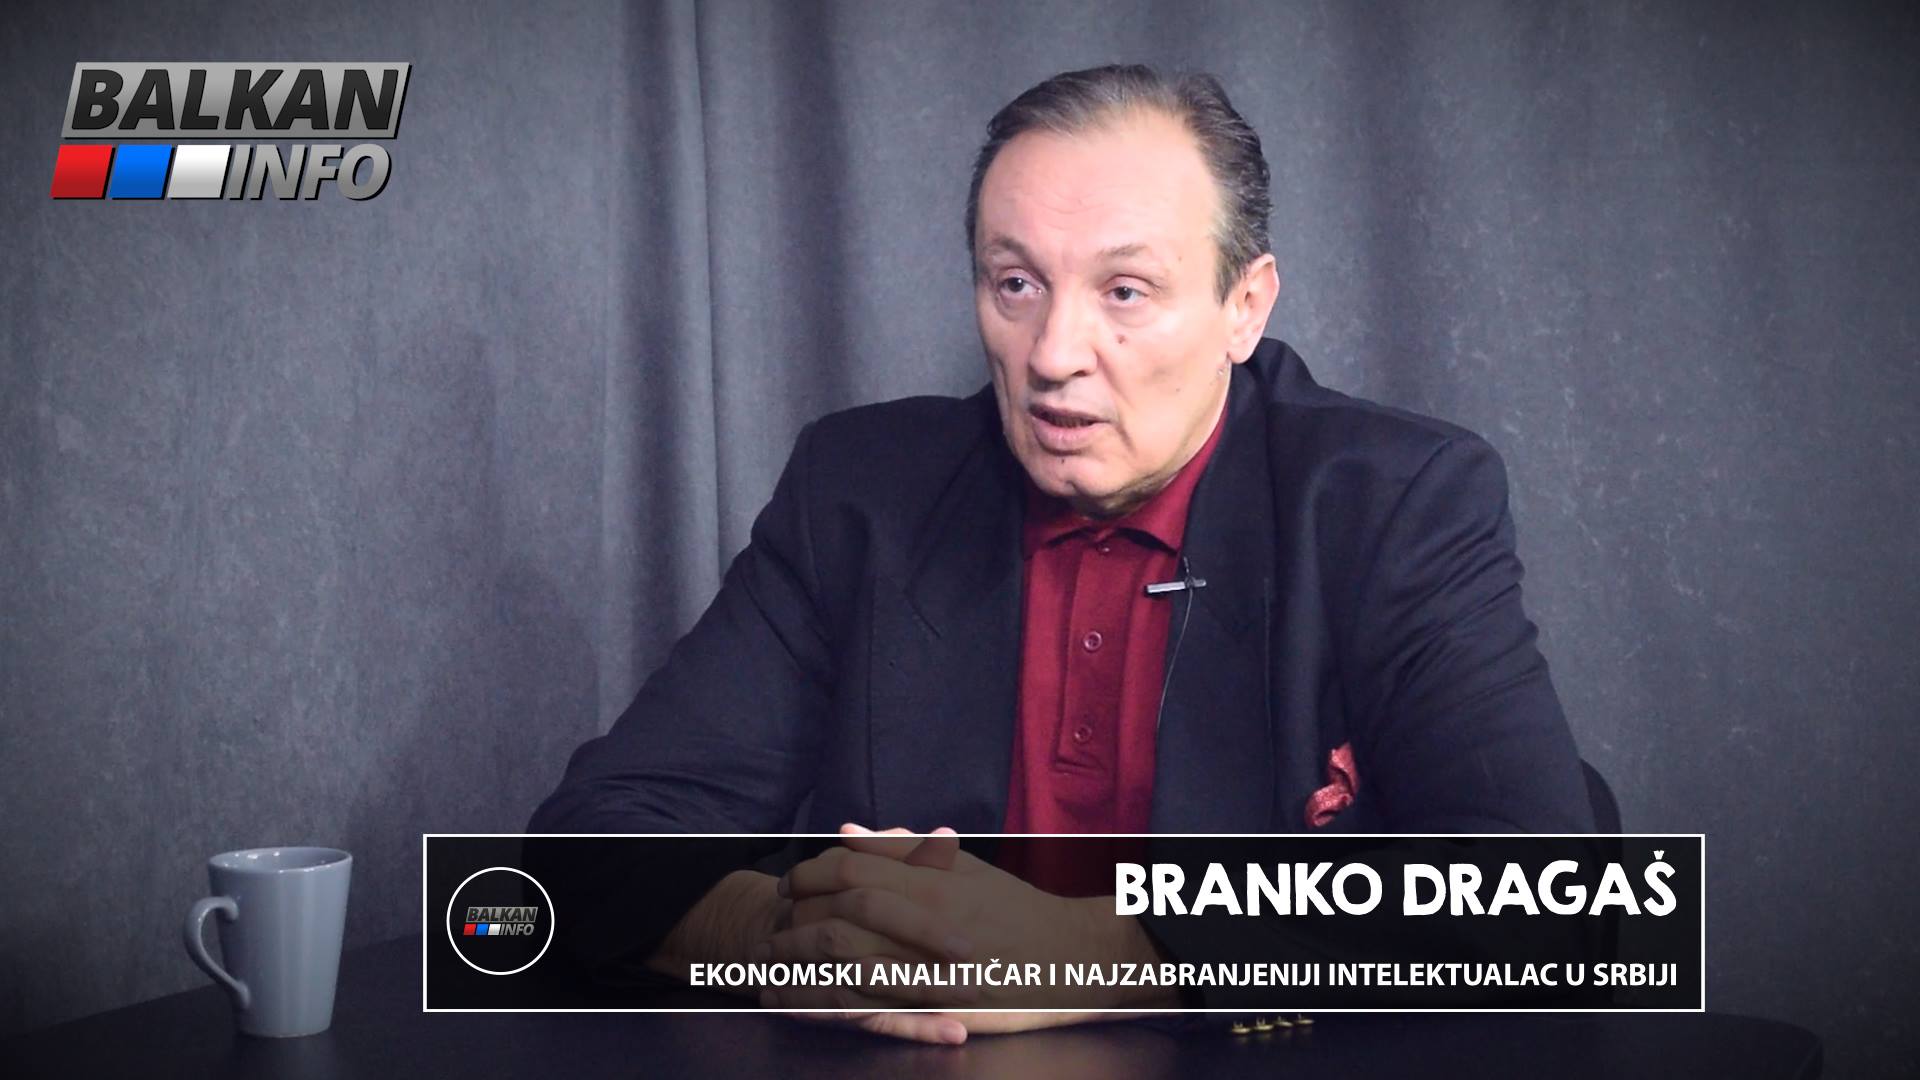 ИНТЕРВЈУ: Бранко Драгаш - Вучић је психички болесник који жели да уништи српски народ! (видео)